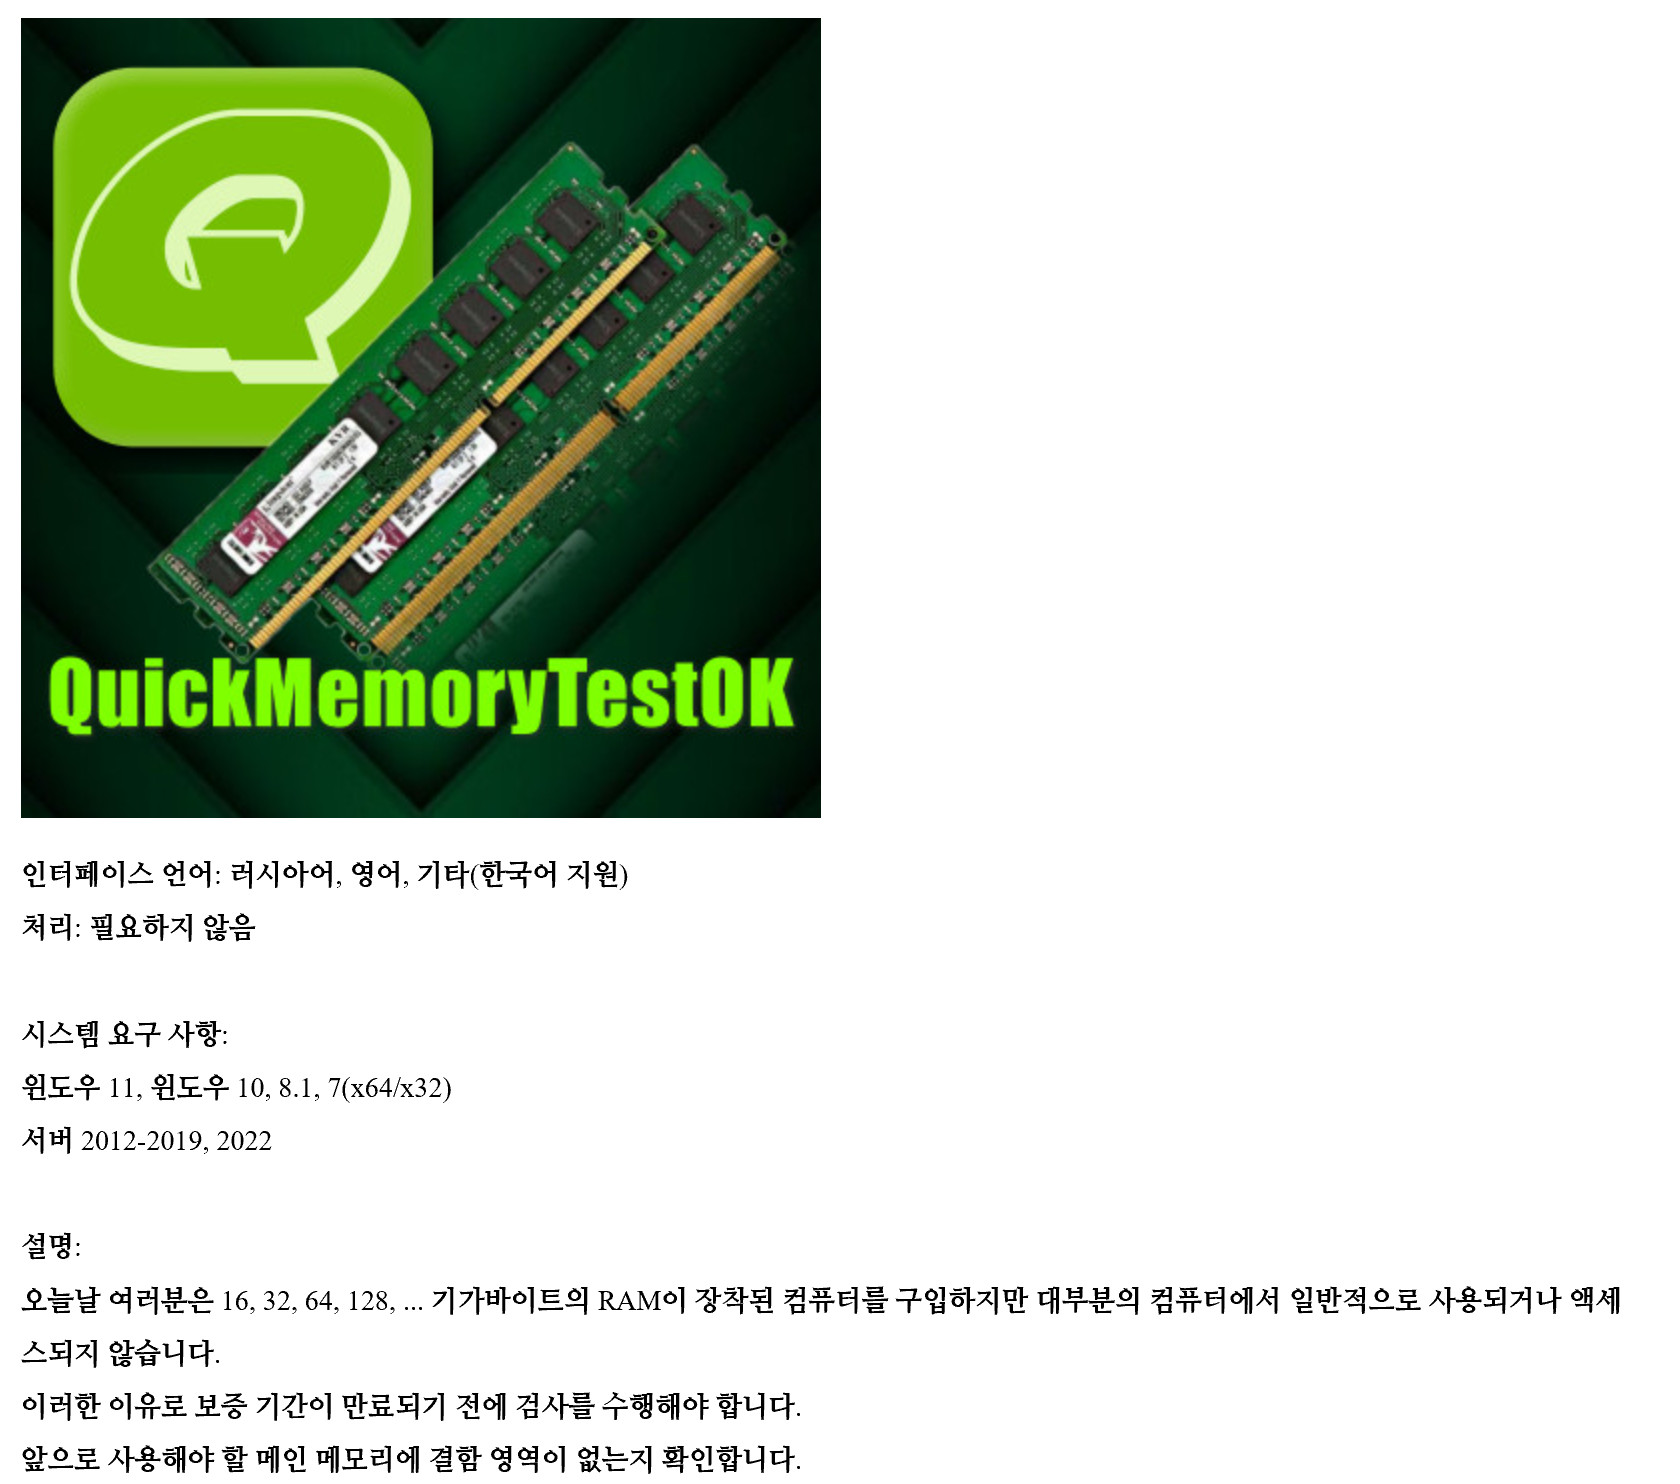 for iphone instal QuickMemoryTestOK 4.61